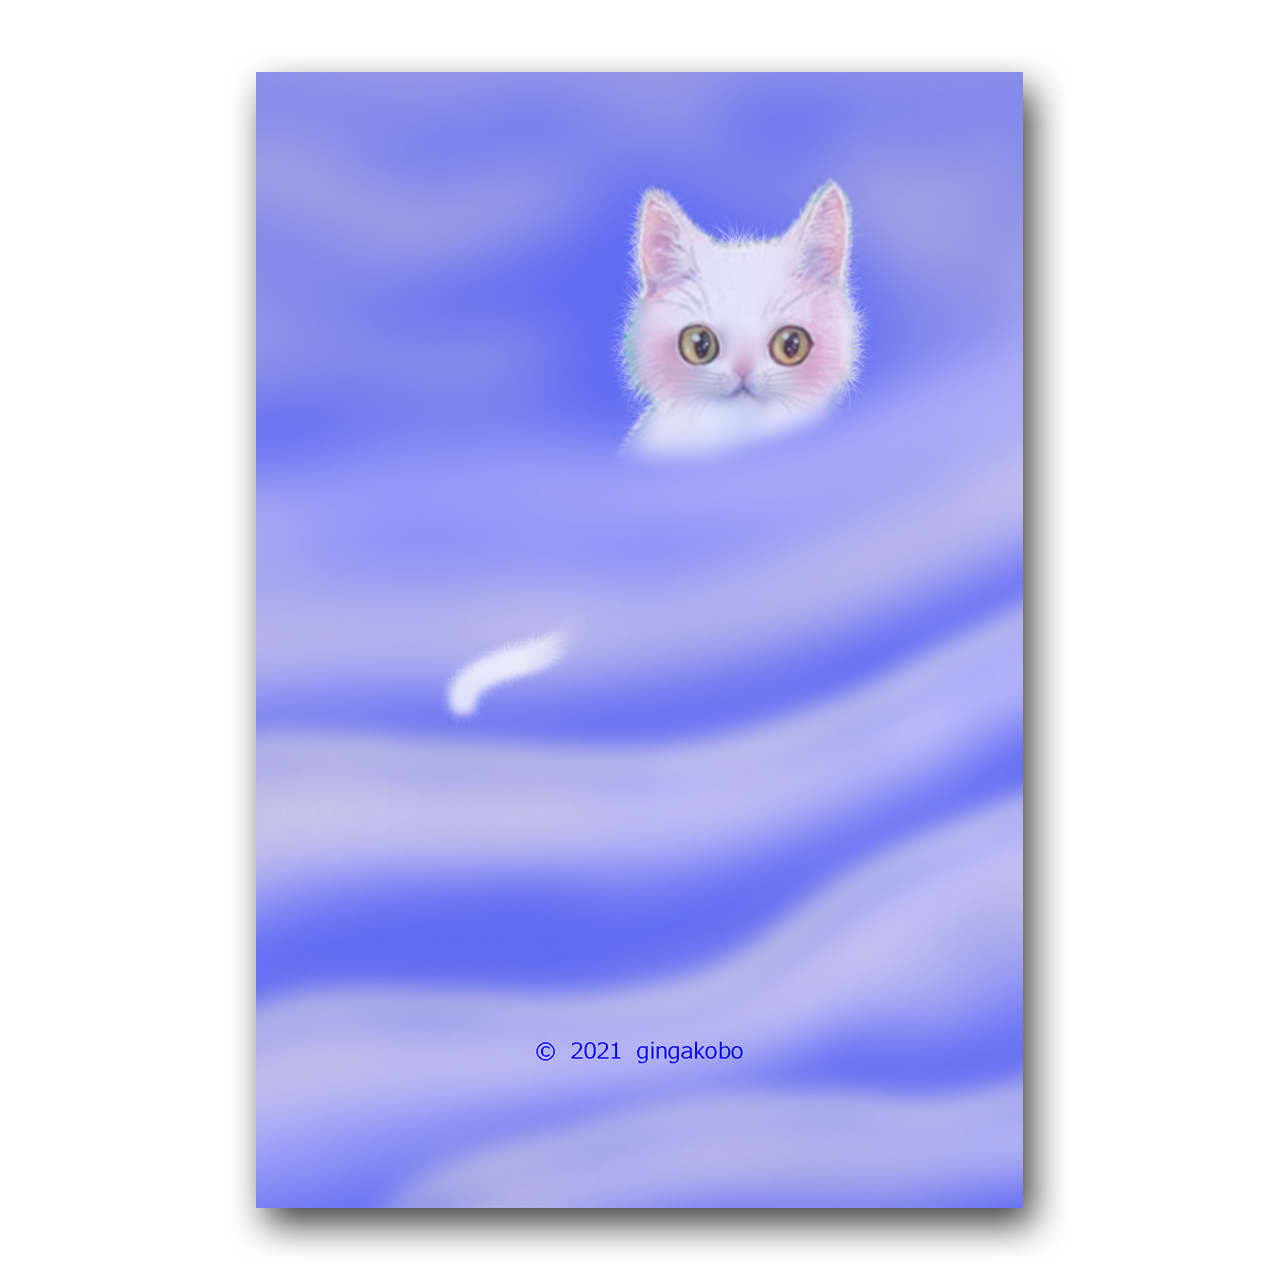 詩 うた いという名の猫 猫 白猫 ほっこり癒しのイラストポストカード2枚組no 13 Iichi ハンドメイド クラフト作品 手仕事品の通販